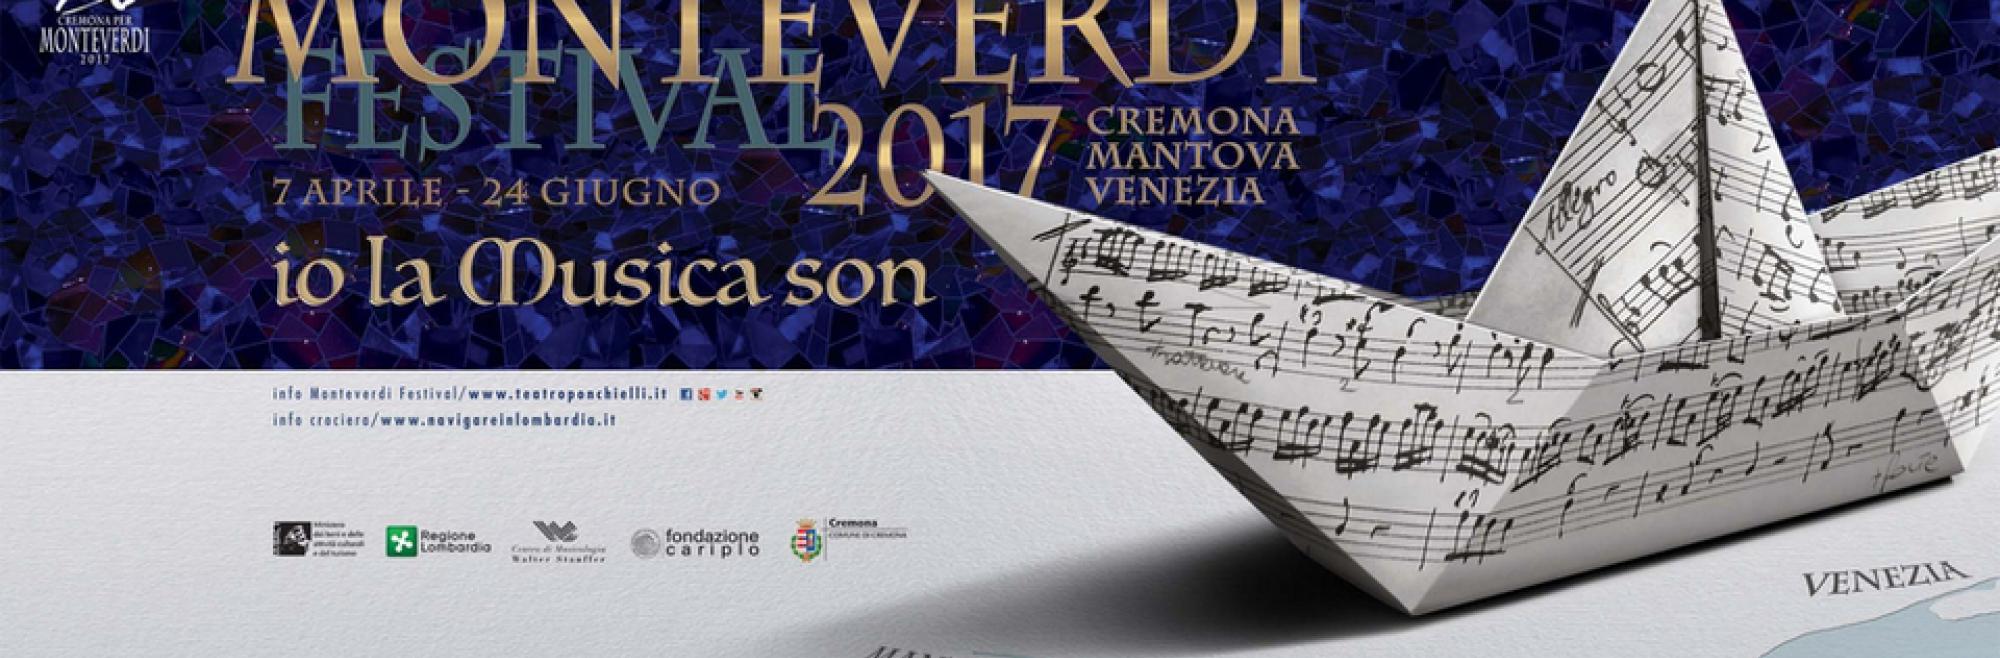 Continua la rassegna Monteverdi Festival 2017 con nuovi appuntamenti